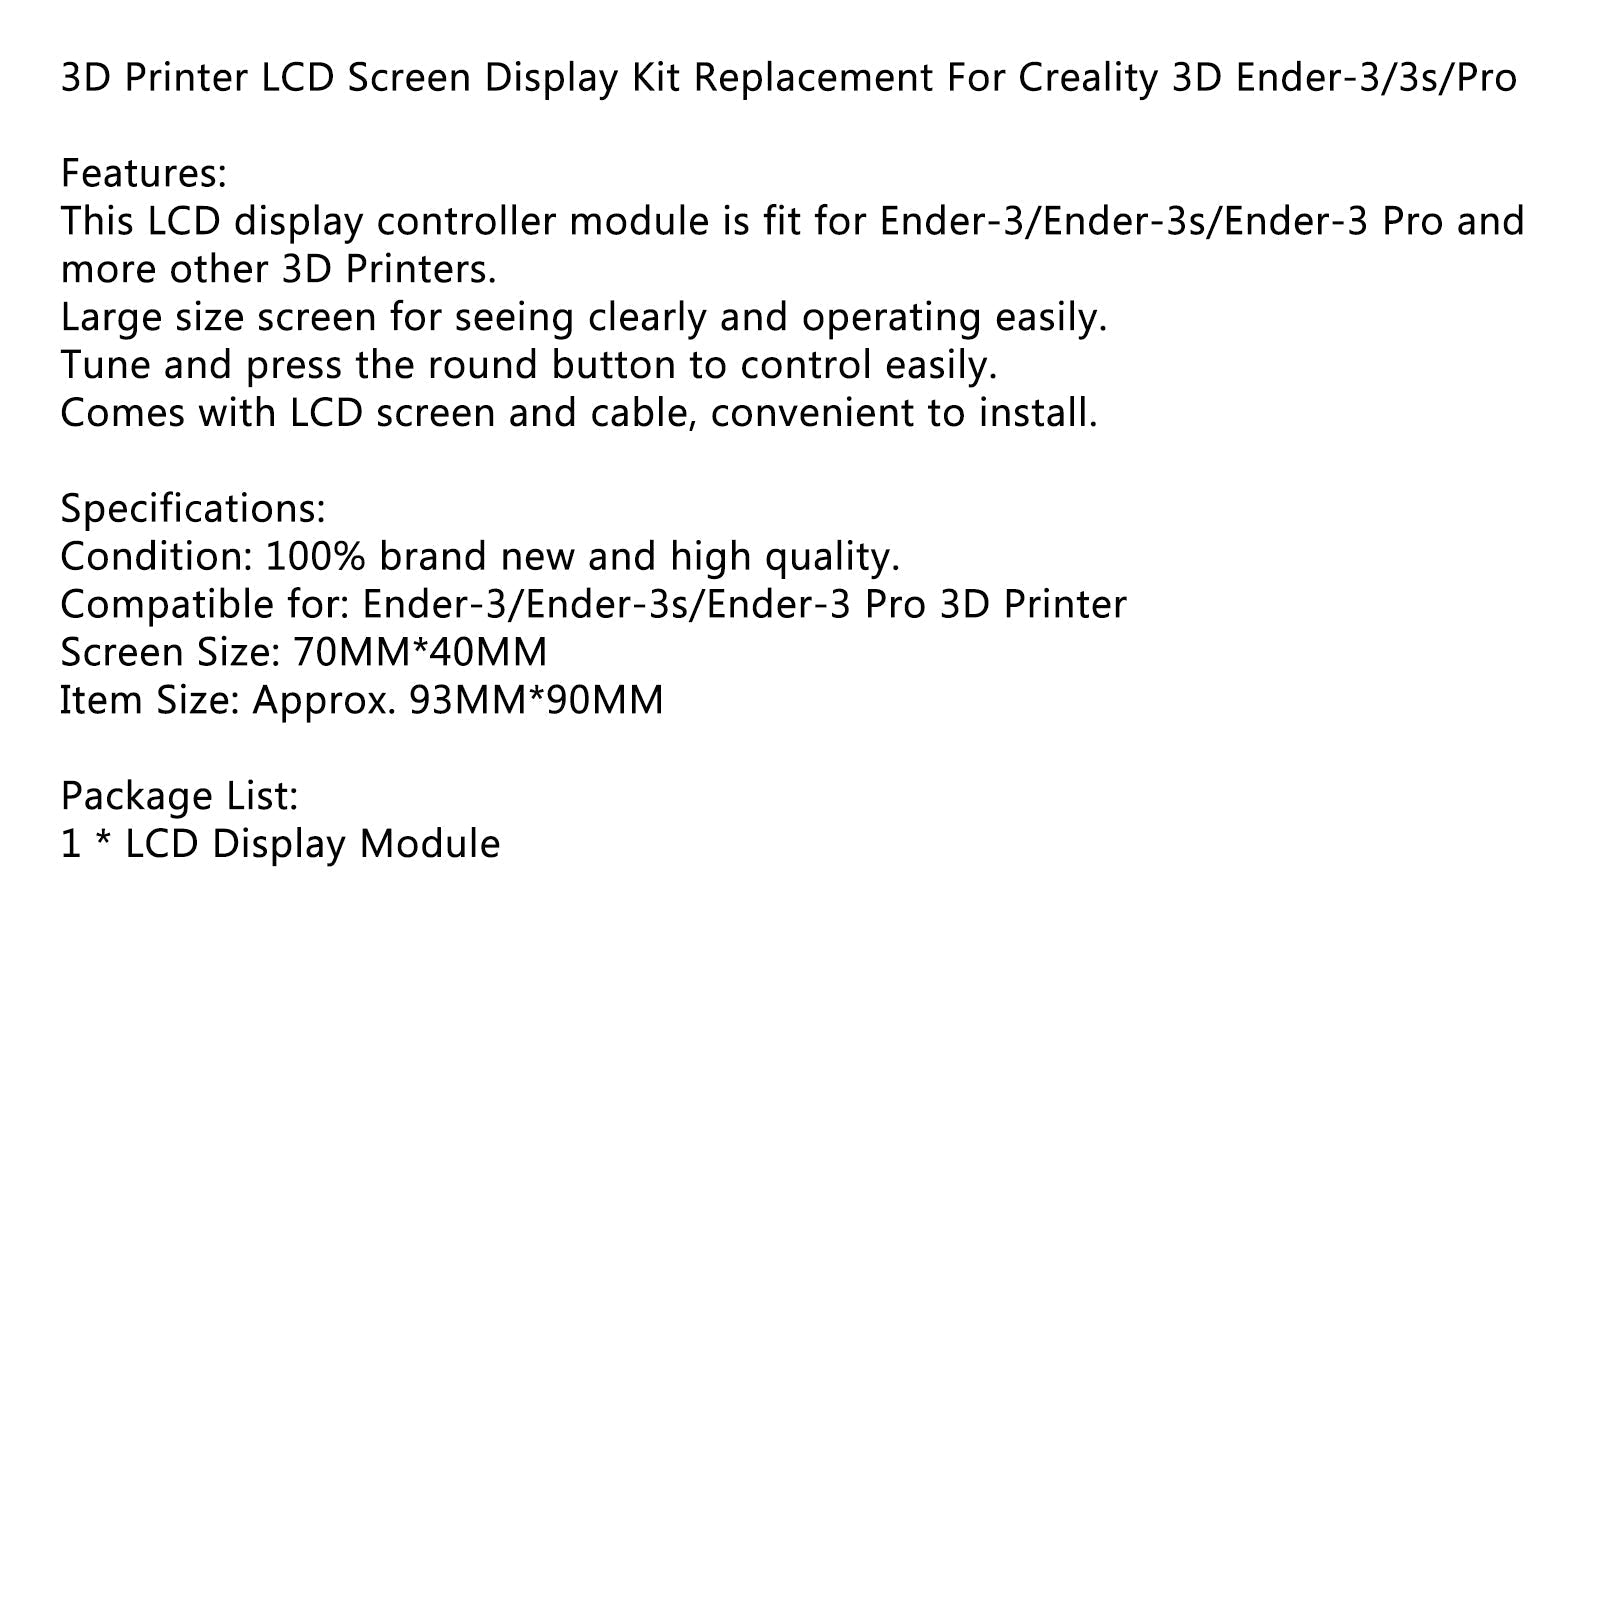 Remplacement du kit d'affichage de l'écran LCD de l'imprimante 3D pour Creality 3D Ender-3/3s/Pro